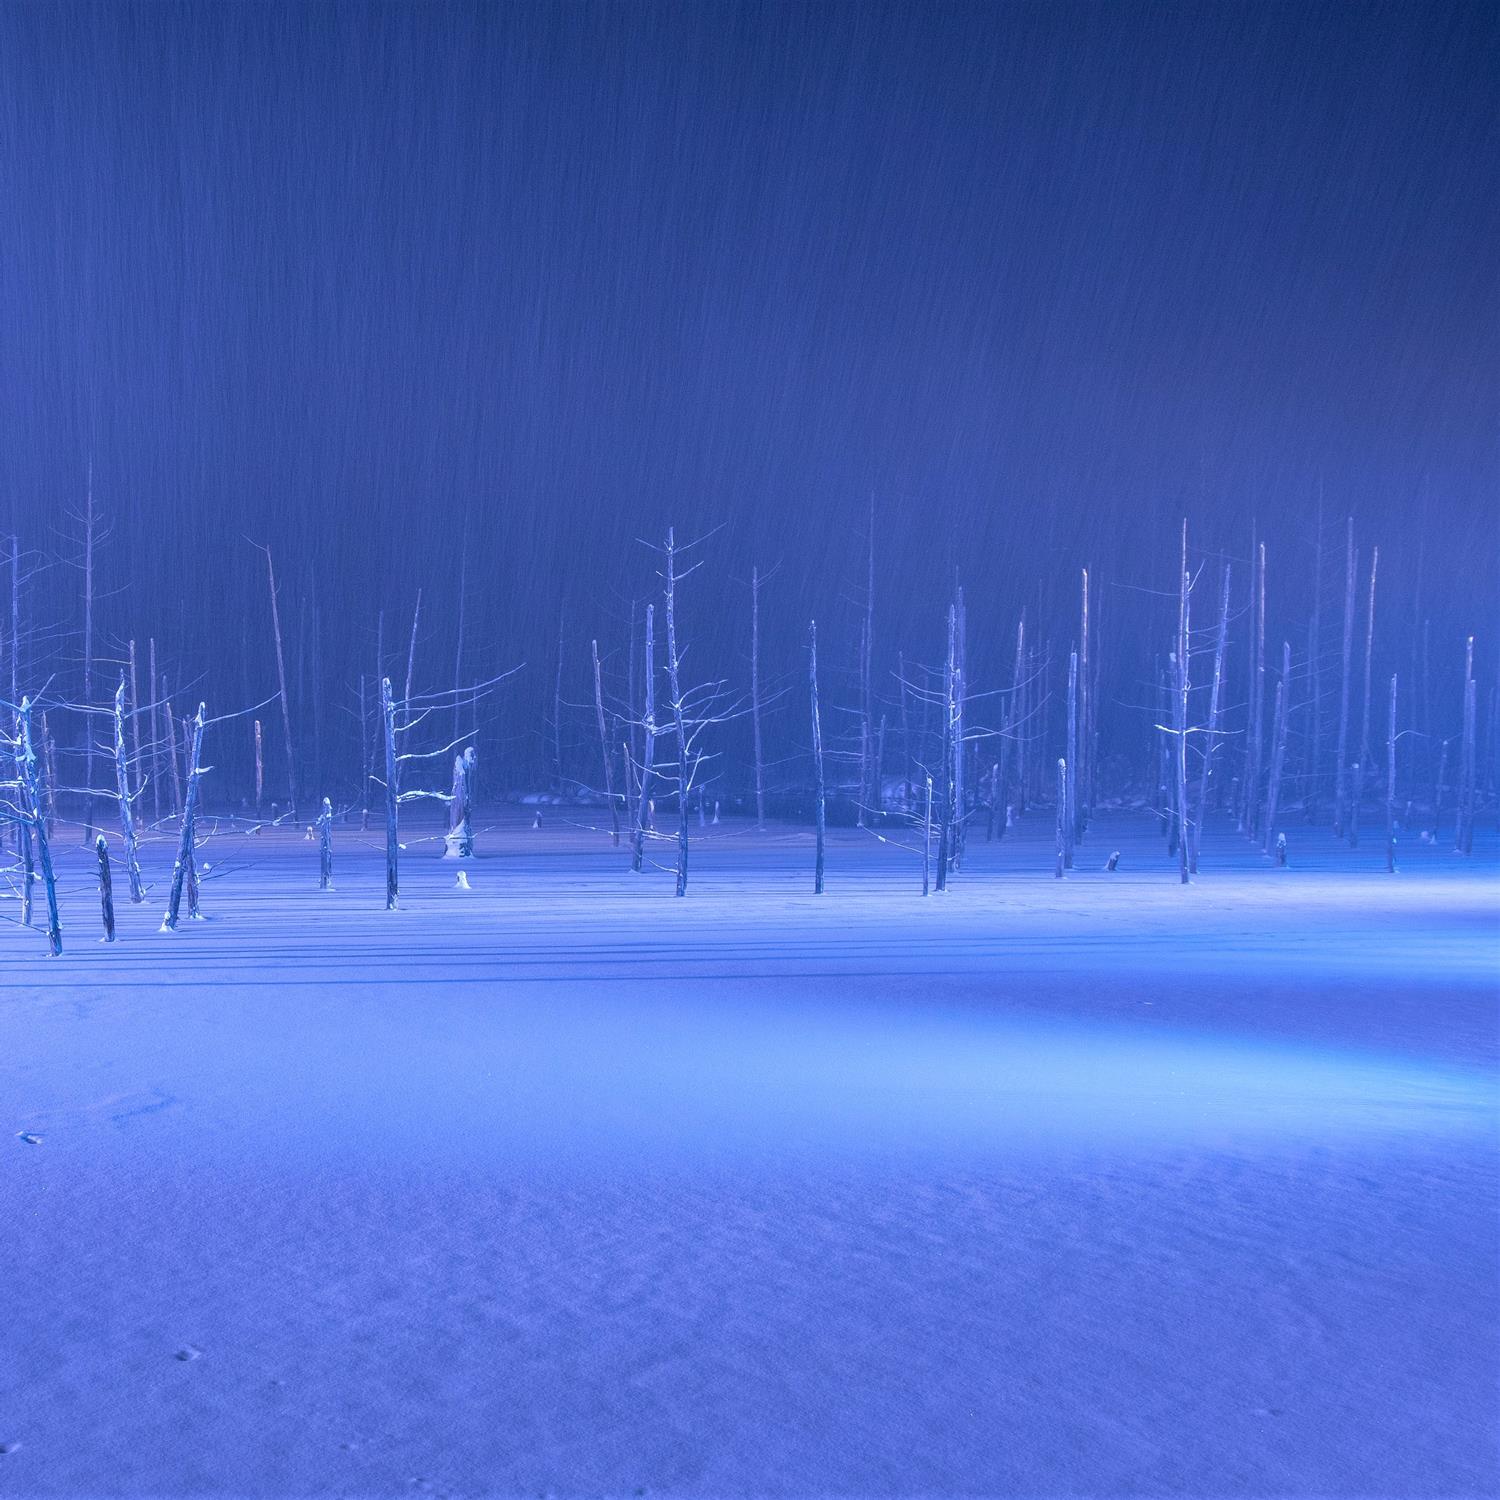 Blue Pond in Biei, Hokkaido = Shutterstock 7